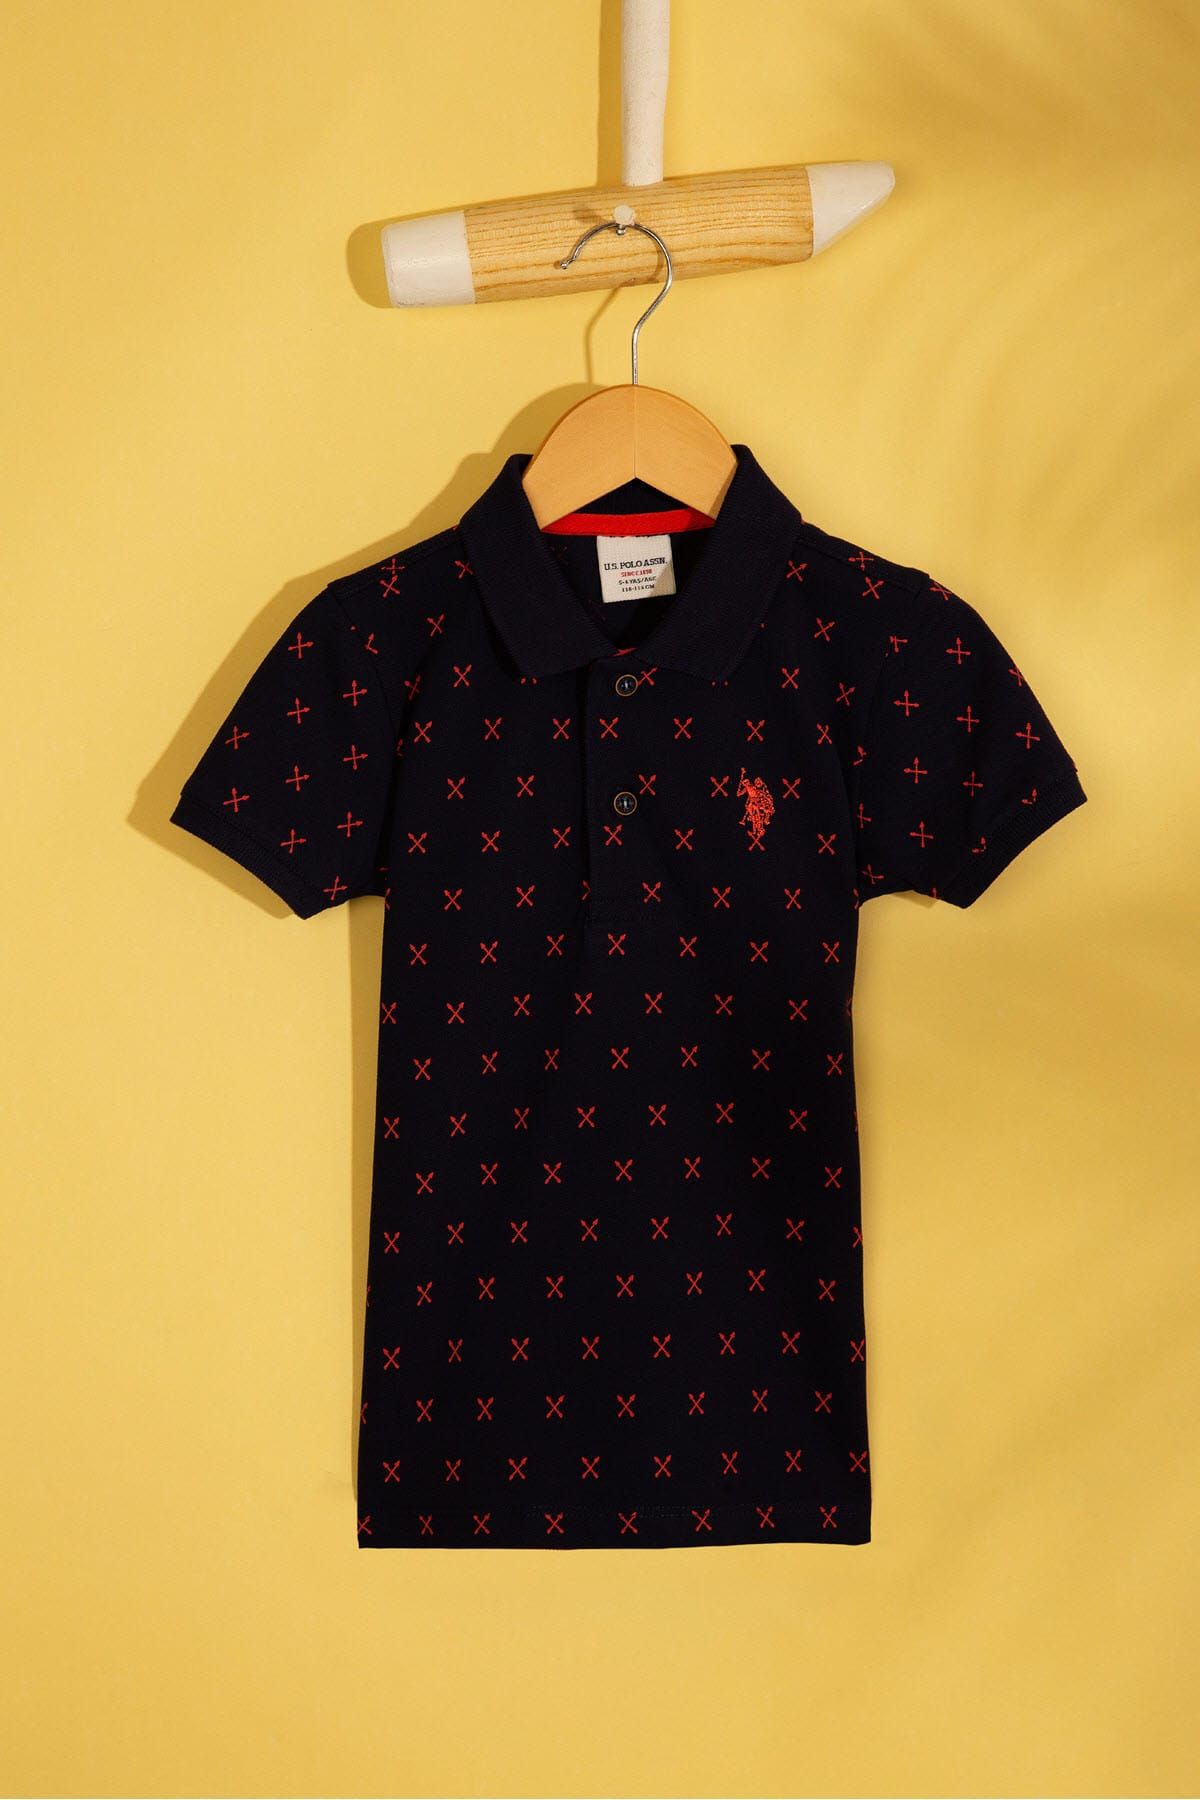 U.S. Polo Assn. Lacivert Erkek Çocuk T-Shirt